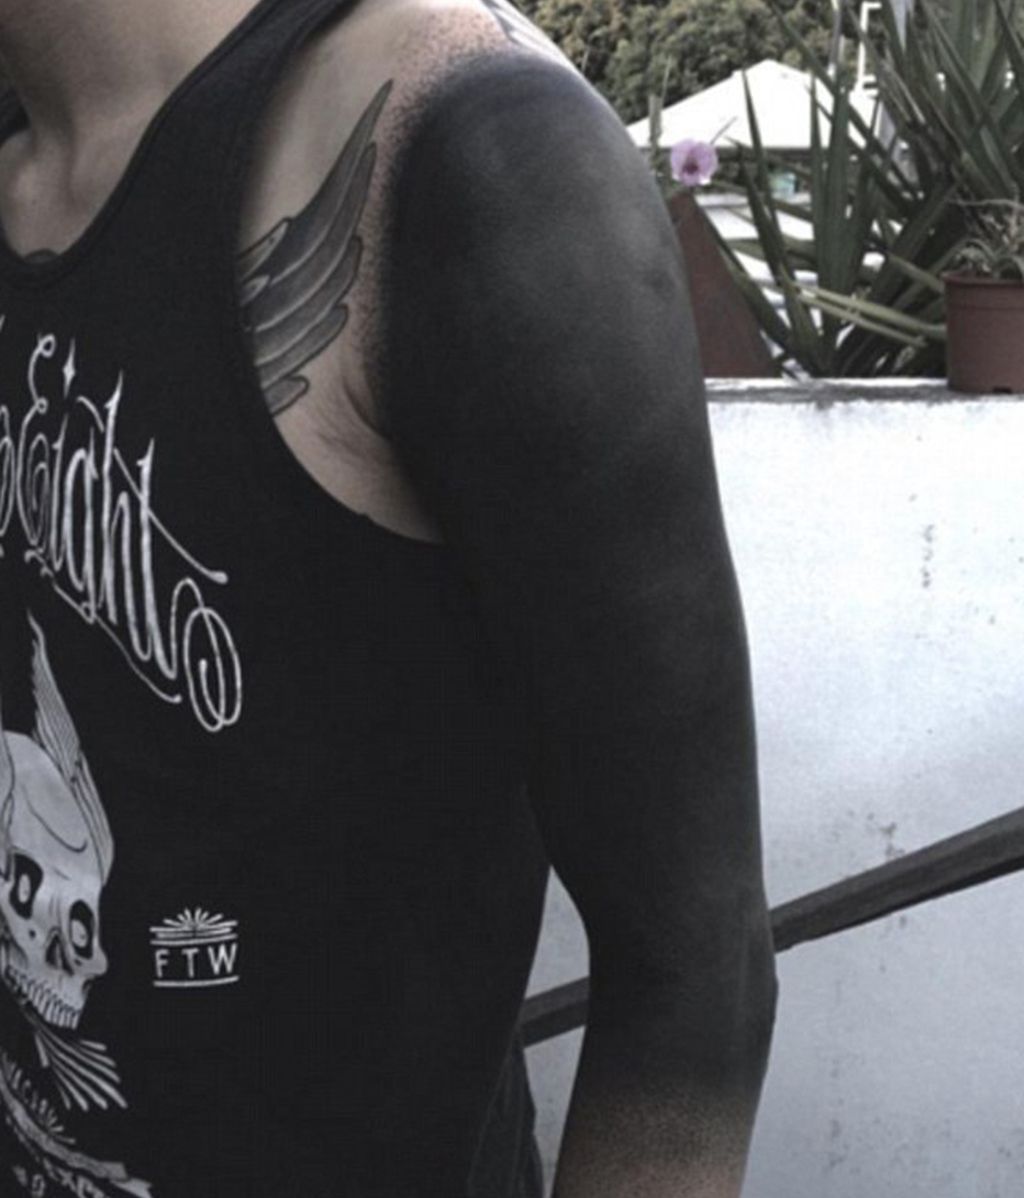 La nueva moda en tatuajes, 'Blackout'